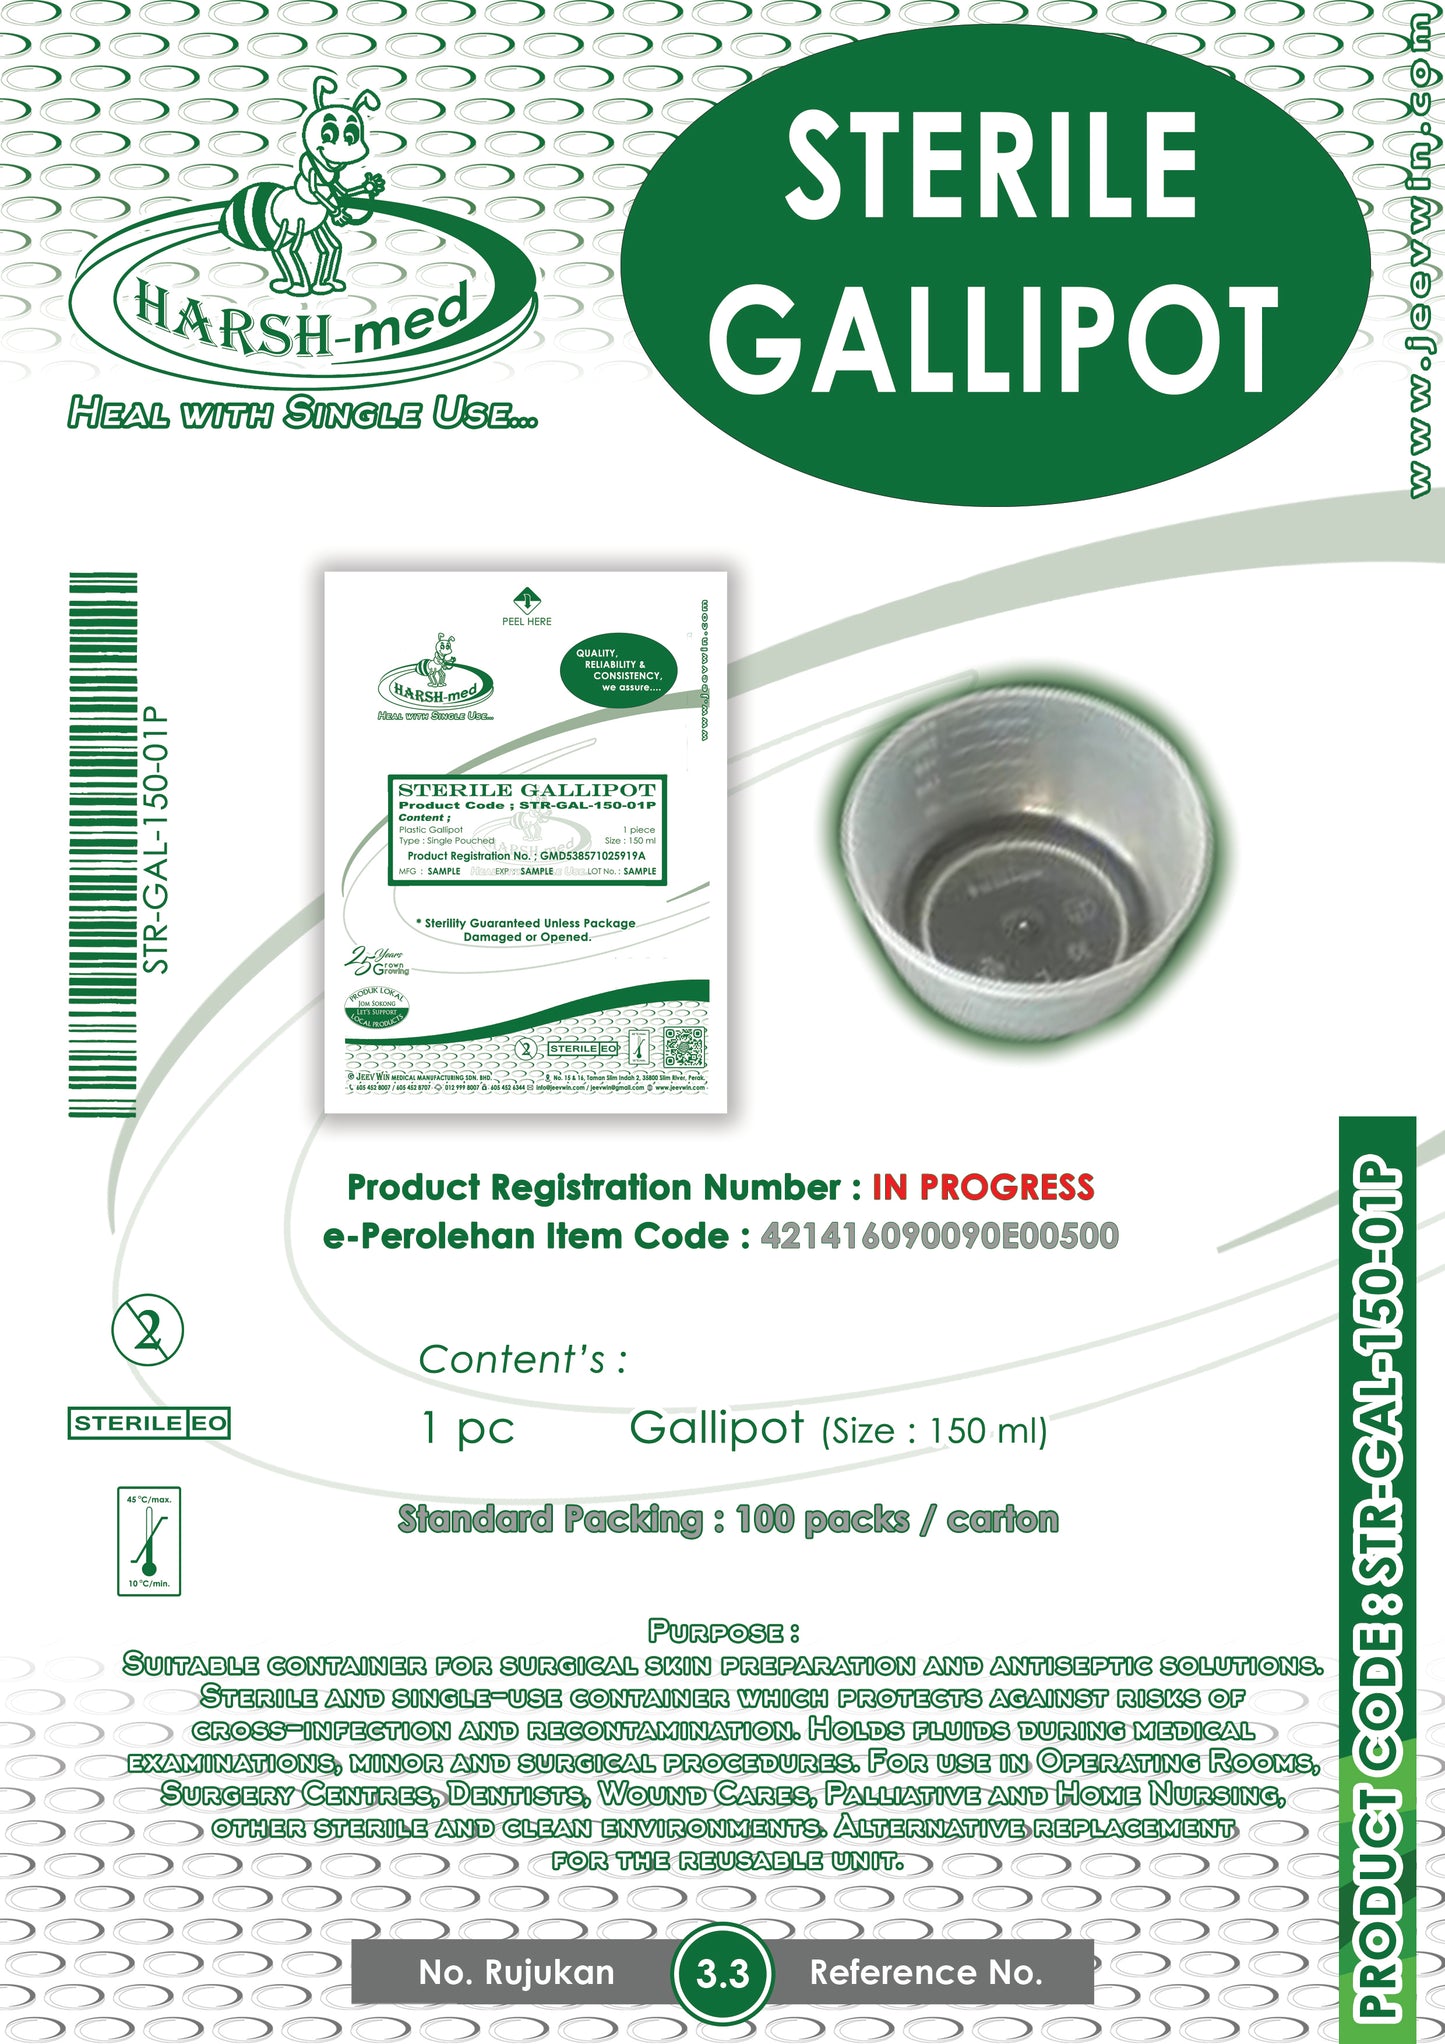 STERILE GALLIPOT - 150 ml